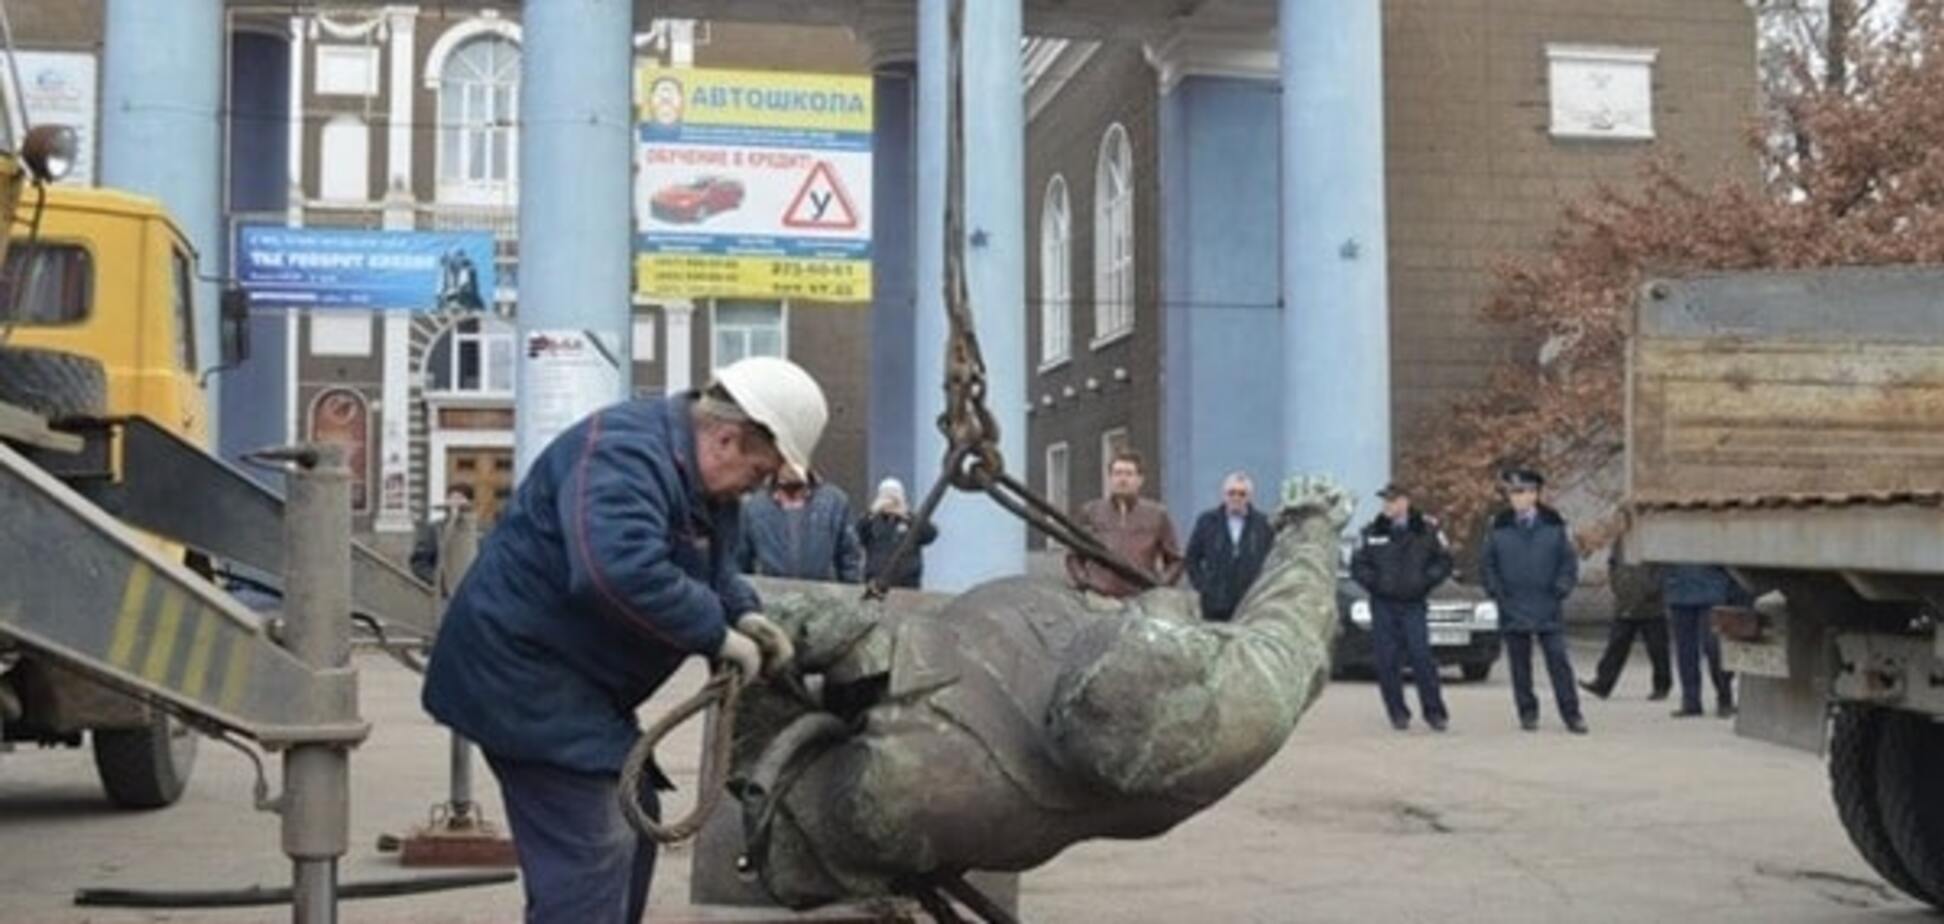 Отправили отдыхать: в Запорожье убрали памятники Дзержинскому и Кирову